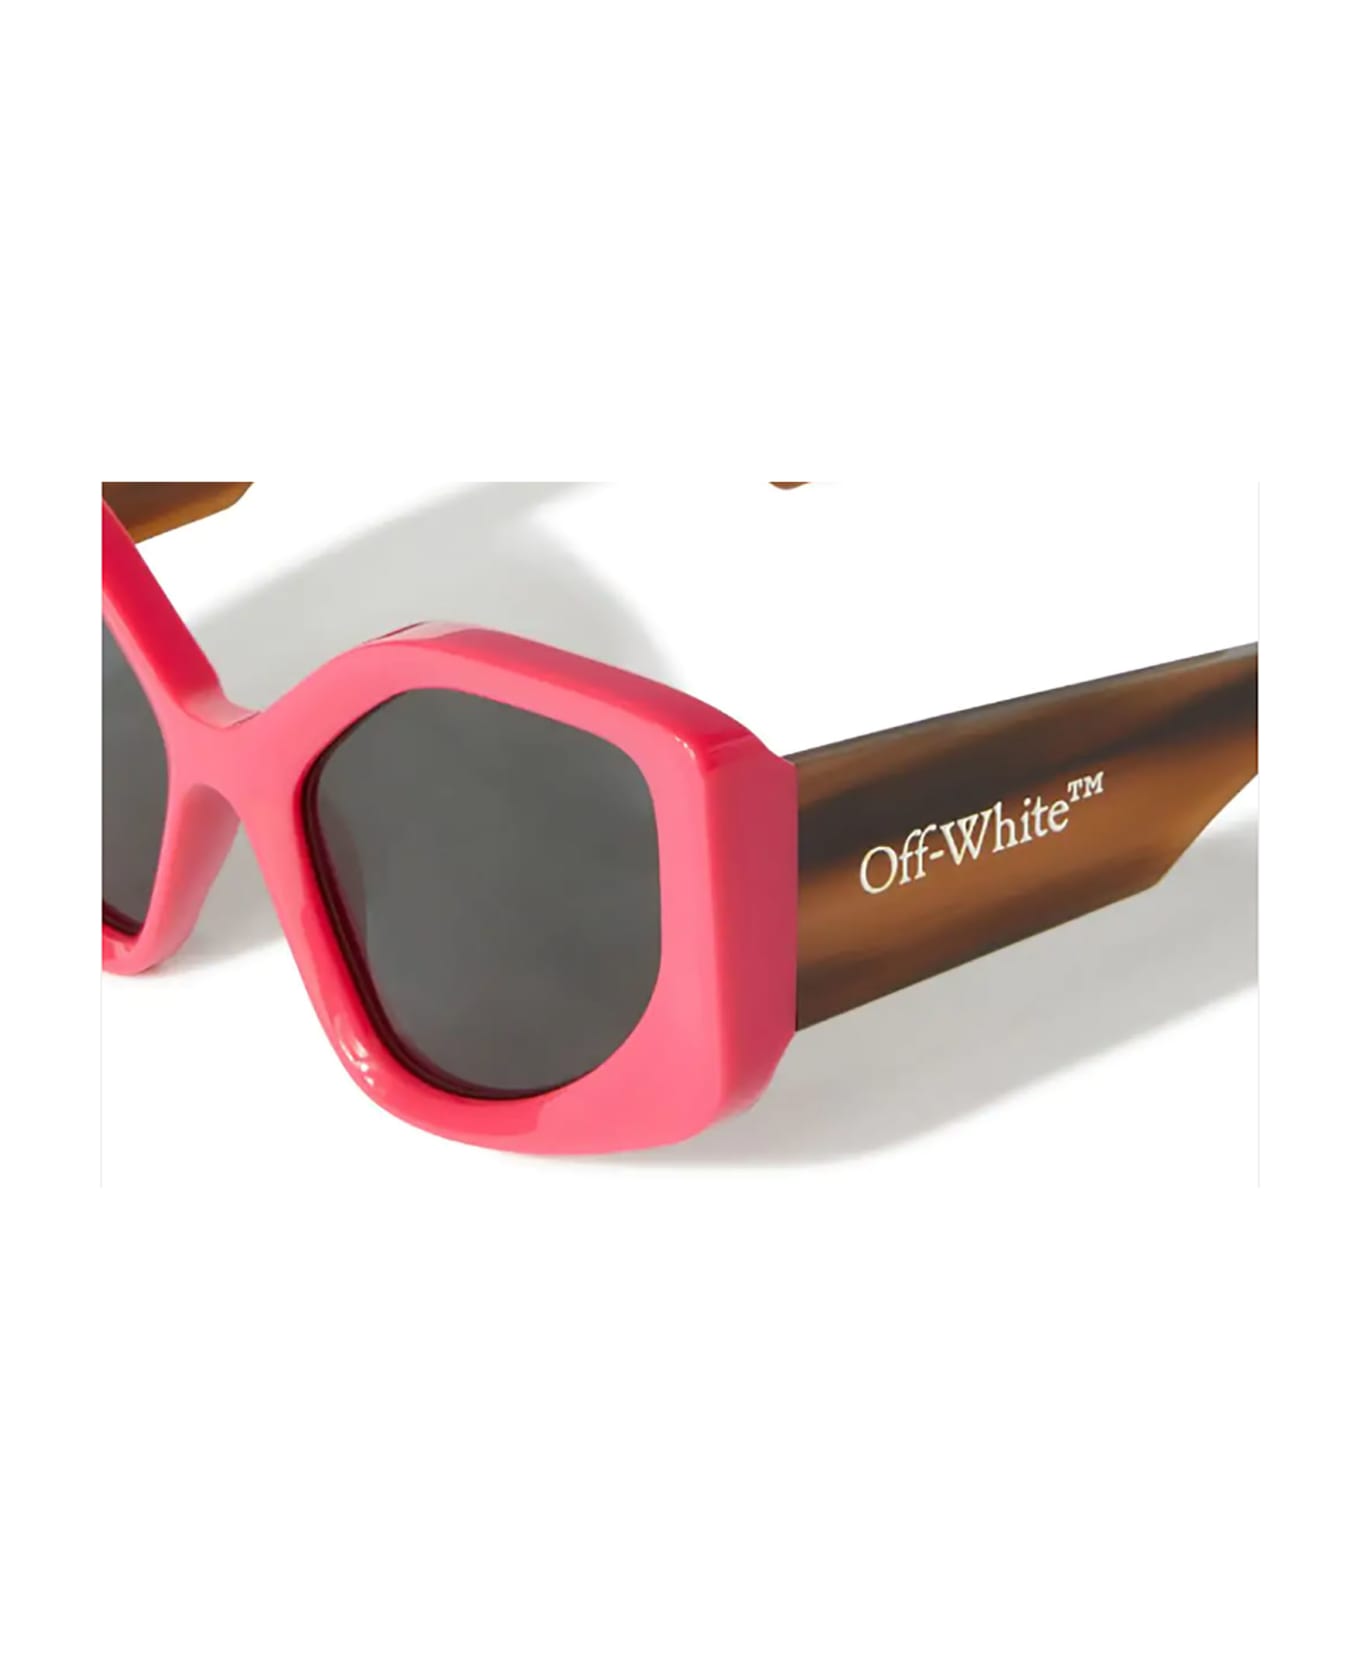 Off-White AF DENVER SUNGLASSES CHERRY DA Sunglasses - Cherry